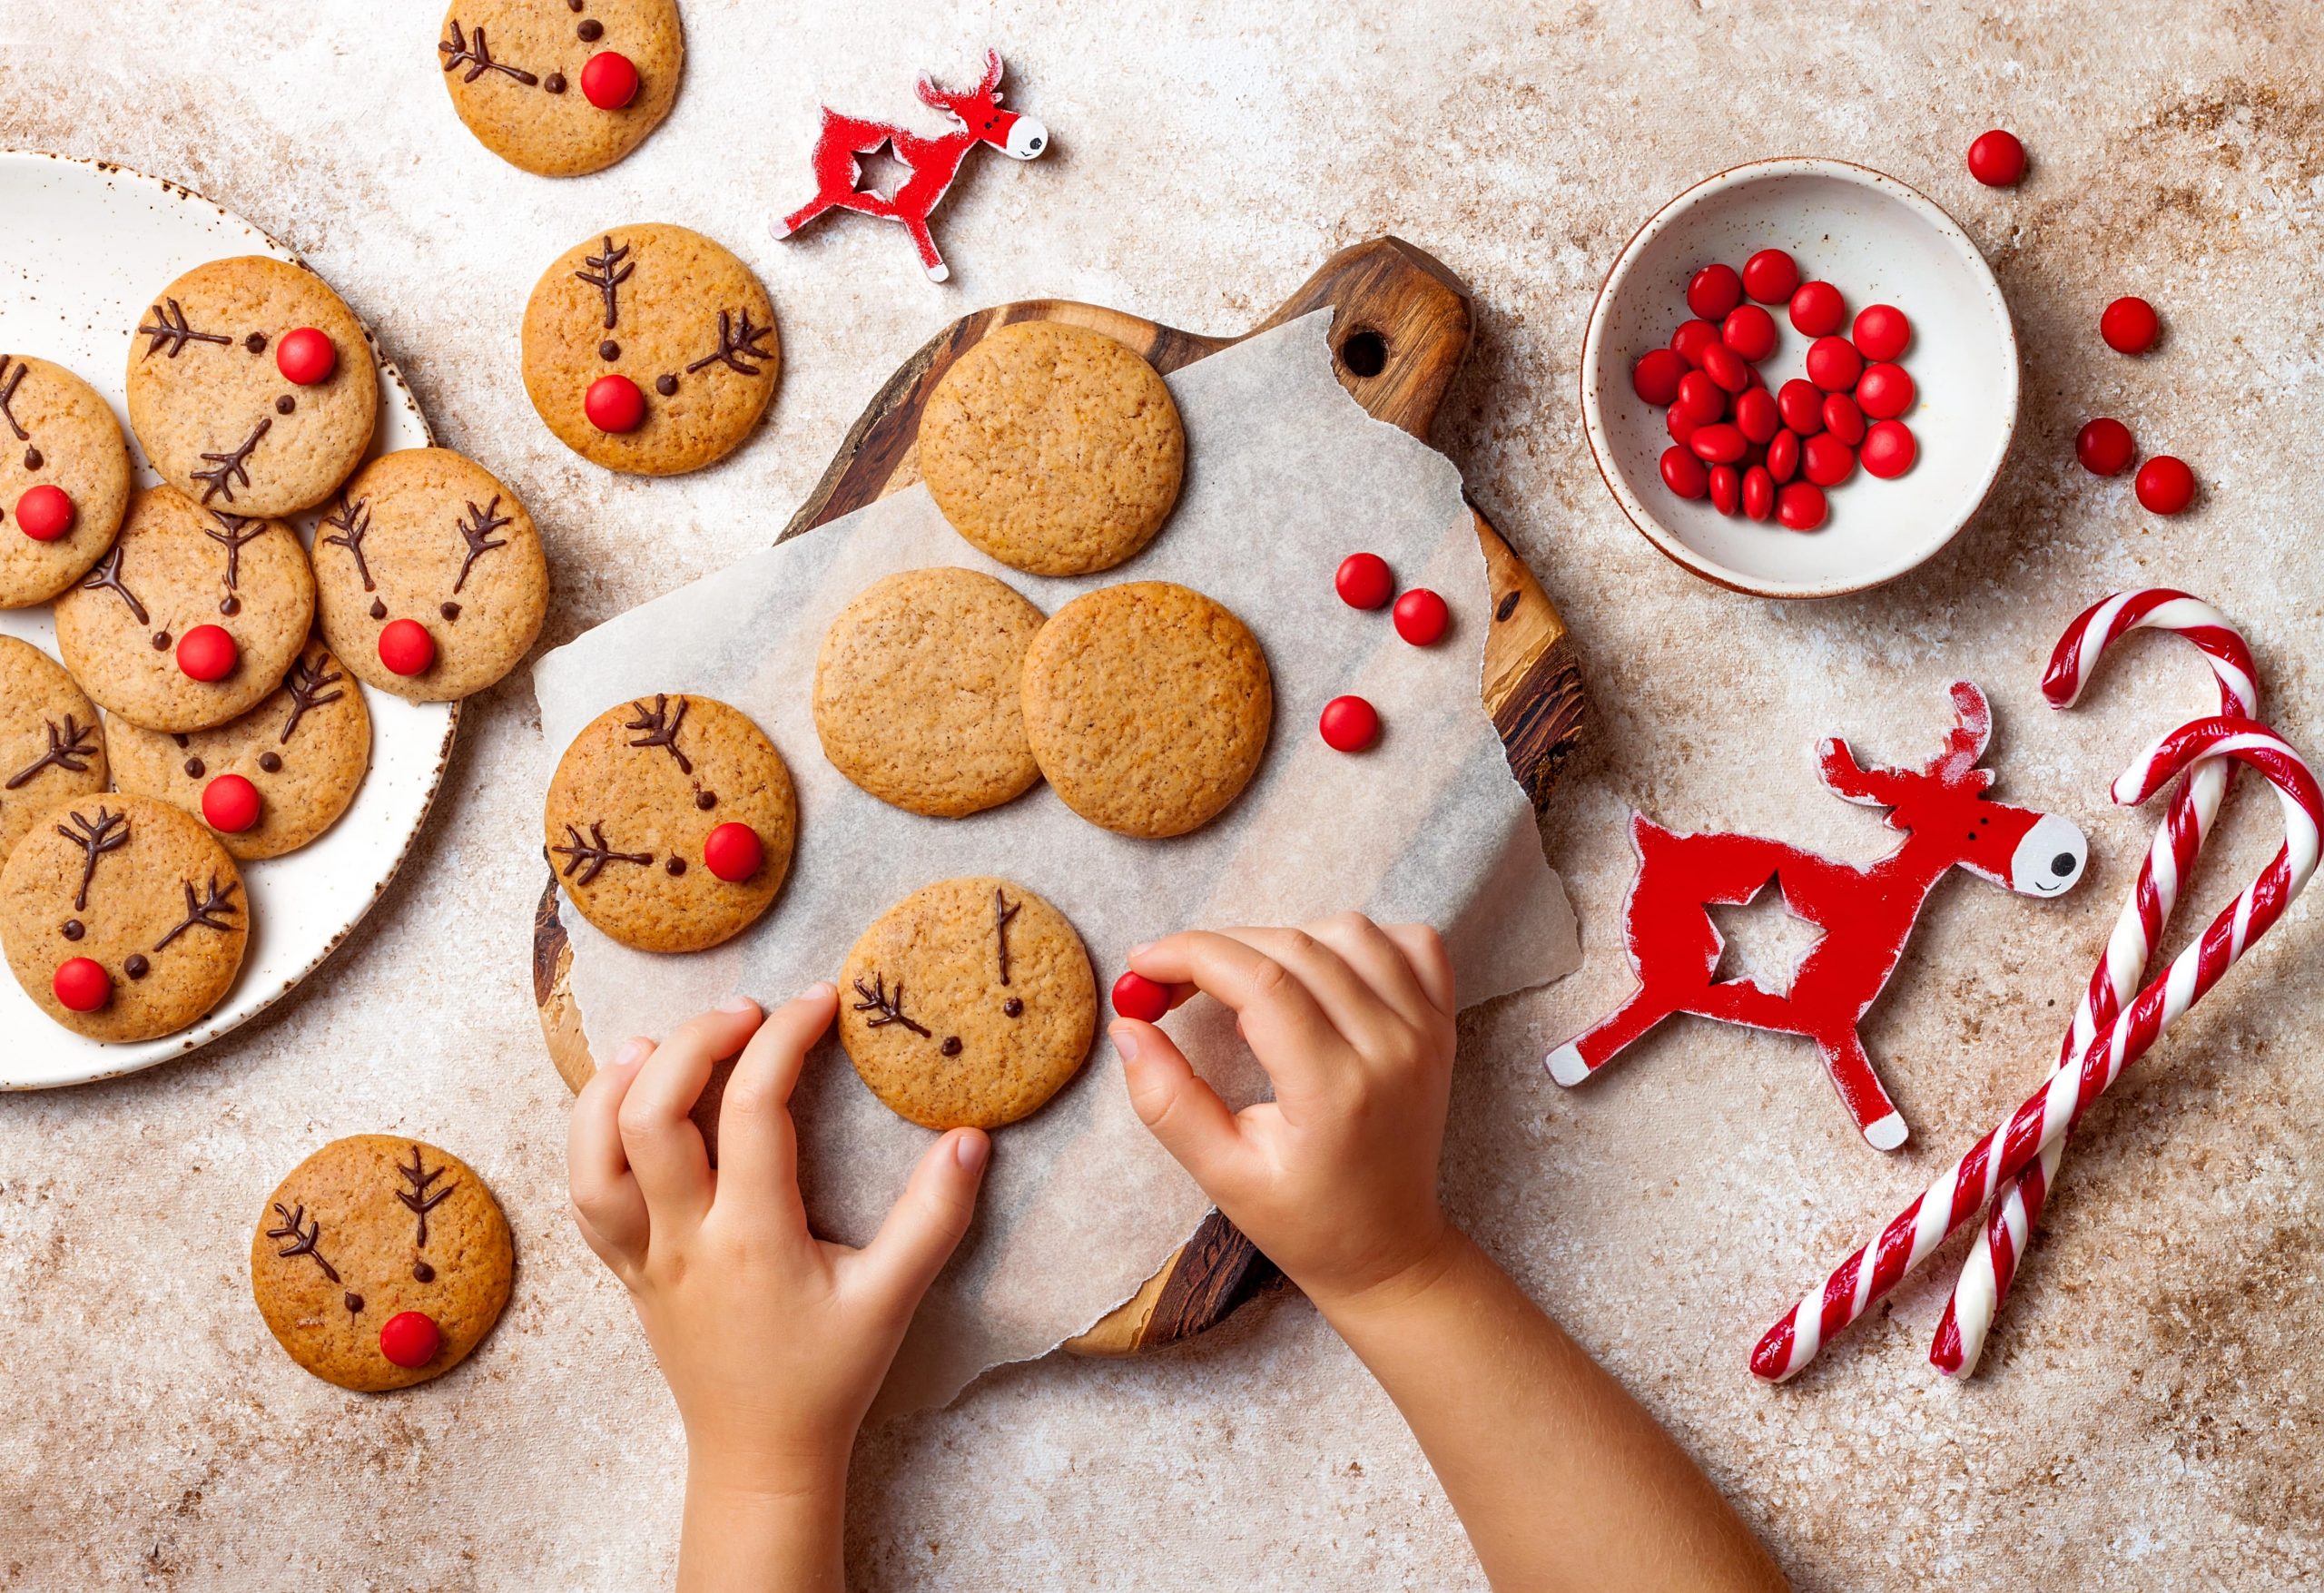 Recetas de una millennial: galletas navideñas con forma de reno